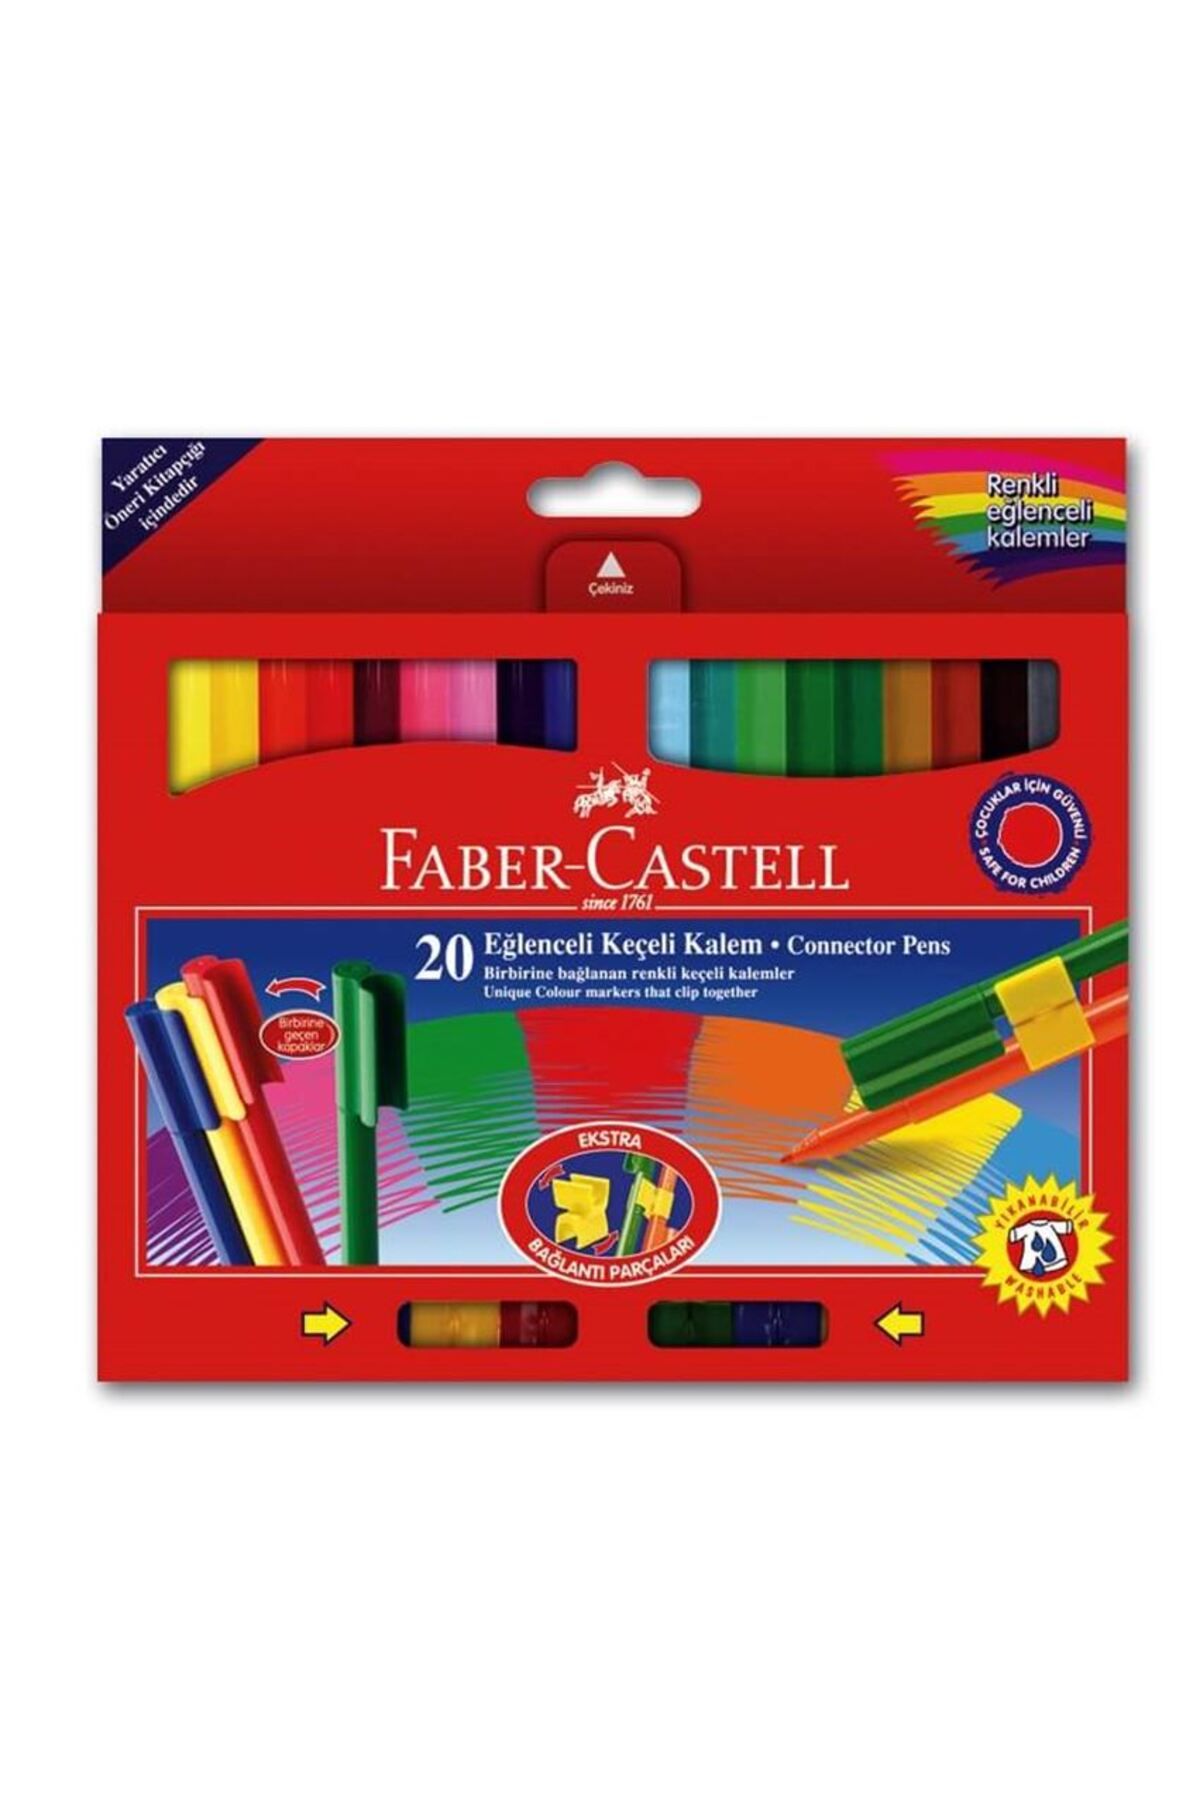 Faber Castell Faber 20 Renk Eğlenceli Keçeli Kalem 68112000